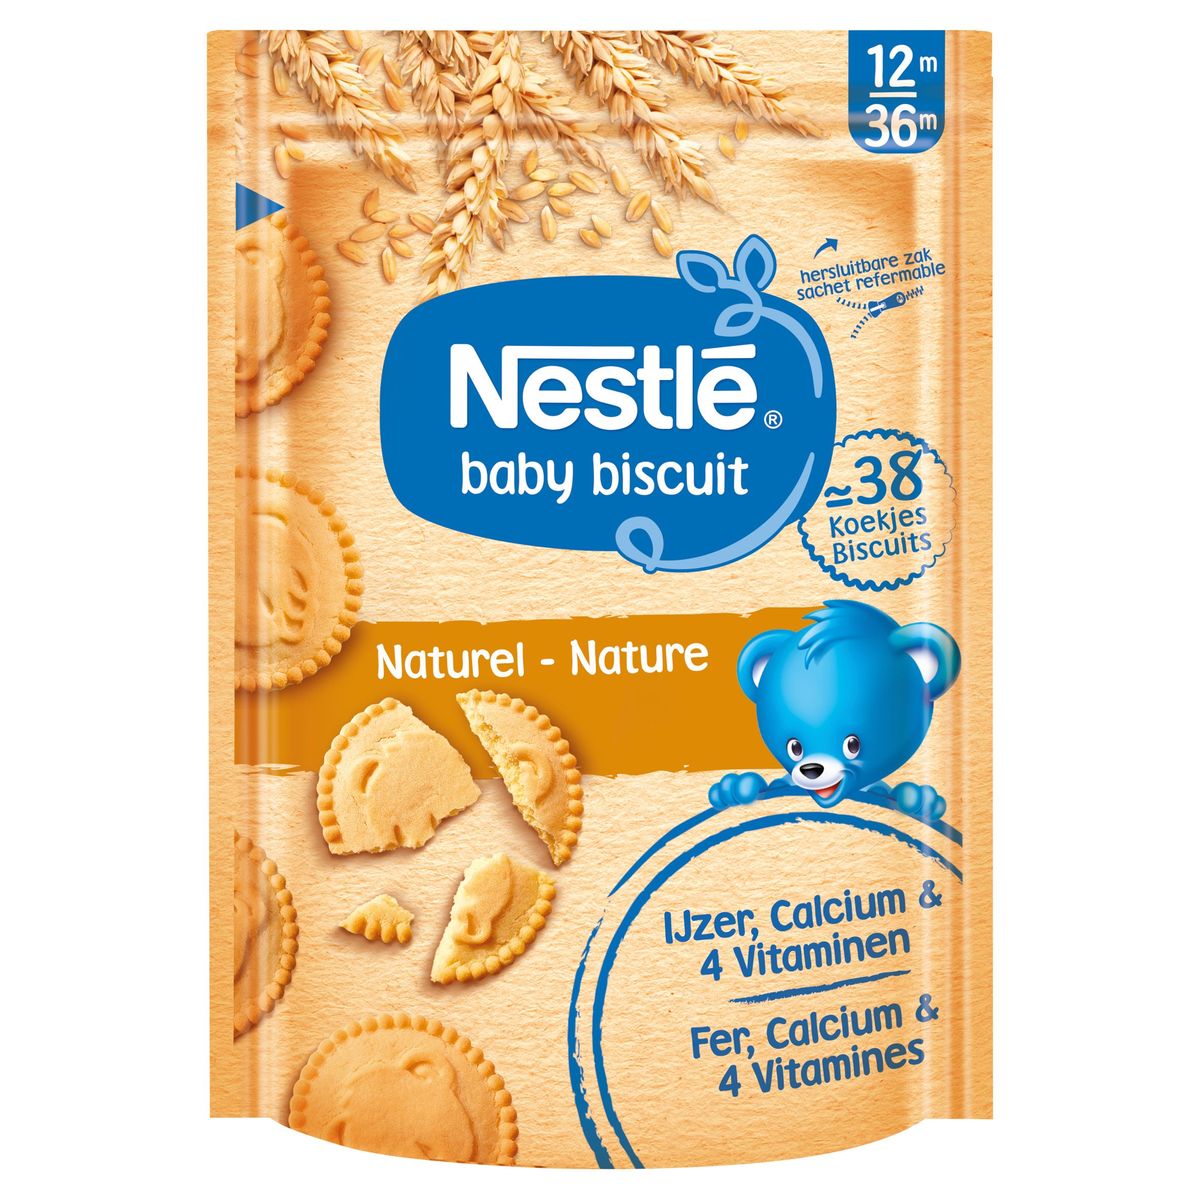 Nestlé Baby Biscuit Koekje Natuur vanaf 12 maanden 180g